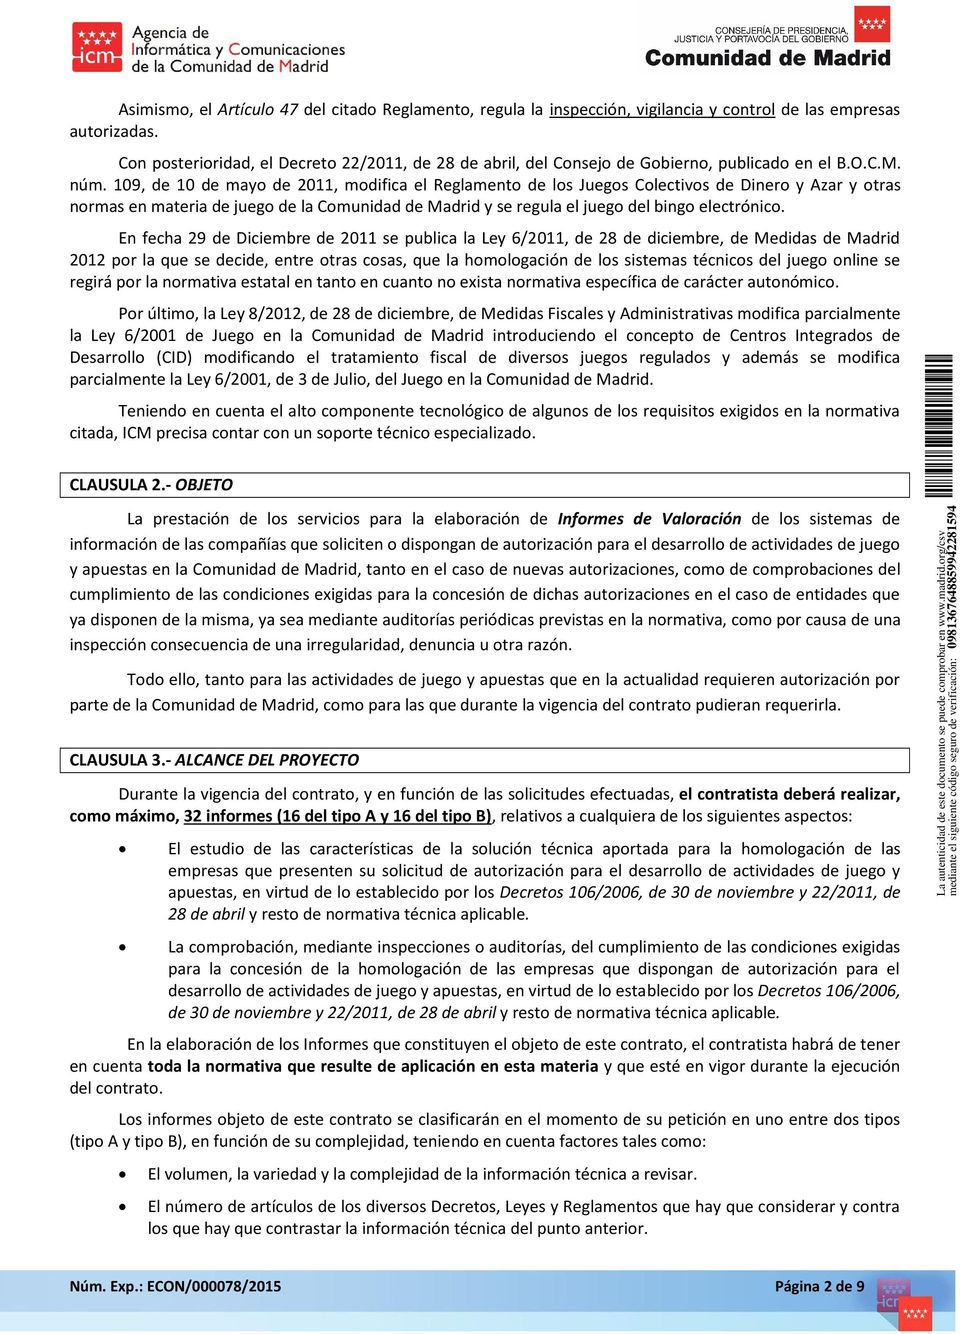 109, de 10 de mayo de 2011, modifica el Reglamento de los Juegos Colectivos de Dinero y Azar y otras normas en materia de juego de la Comunidad de Madrid y se regula el juego del bingo electrónico.